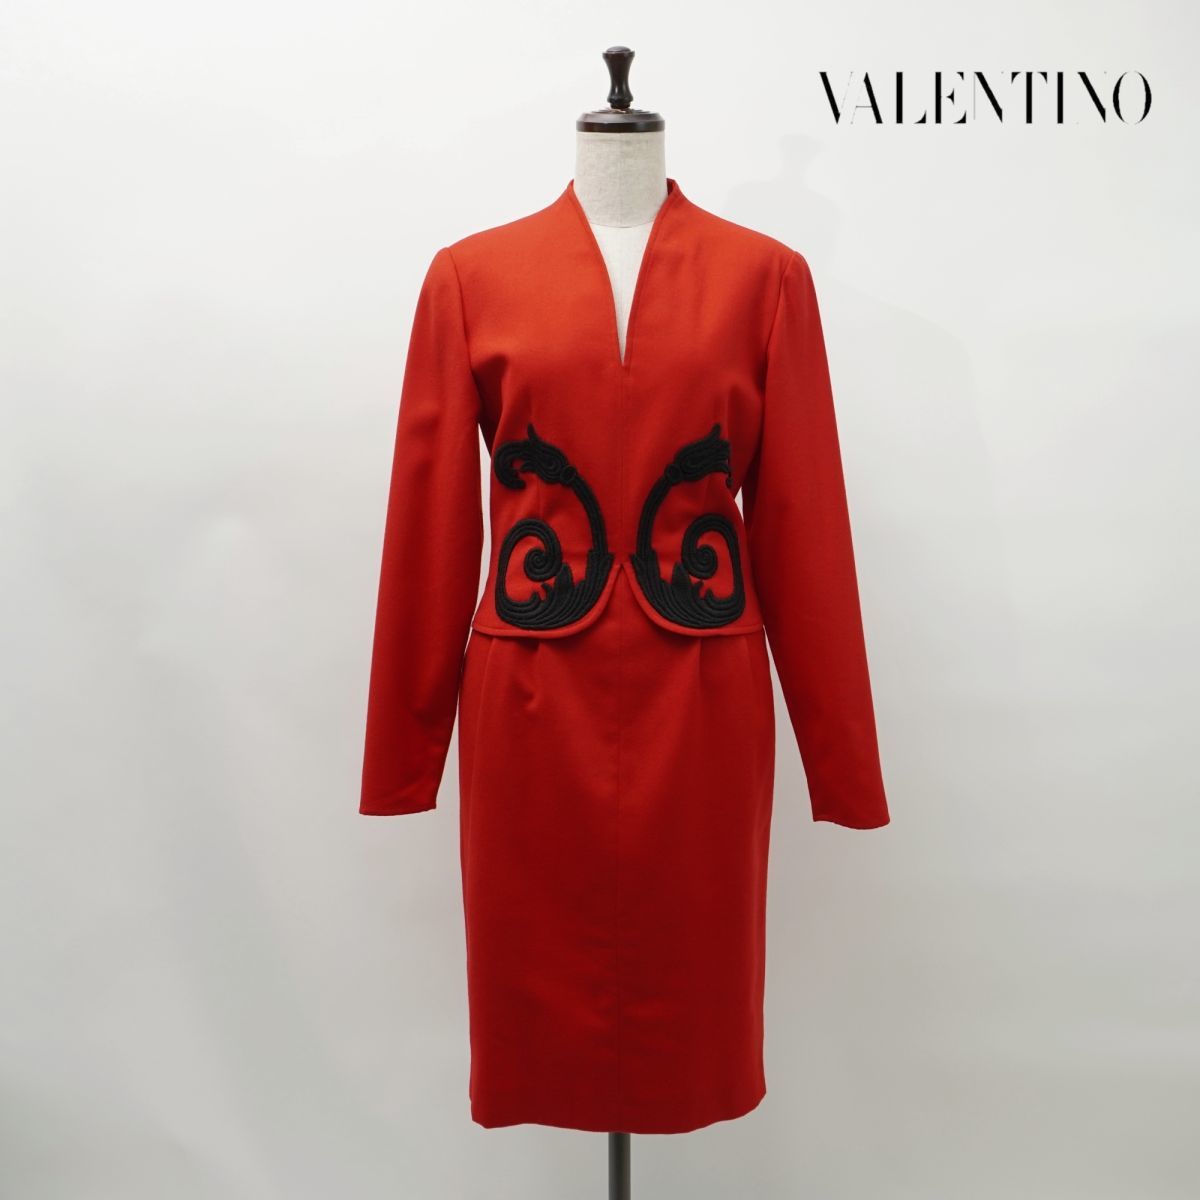 美品 VALENTINO GARAVANI ヴァレンティノ ガラヴァーニ ウエストデザイン刺繍 レイヤードタイトワンピース レディース 赤 サイズ40*MC105